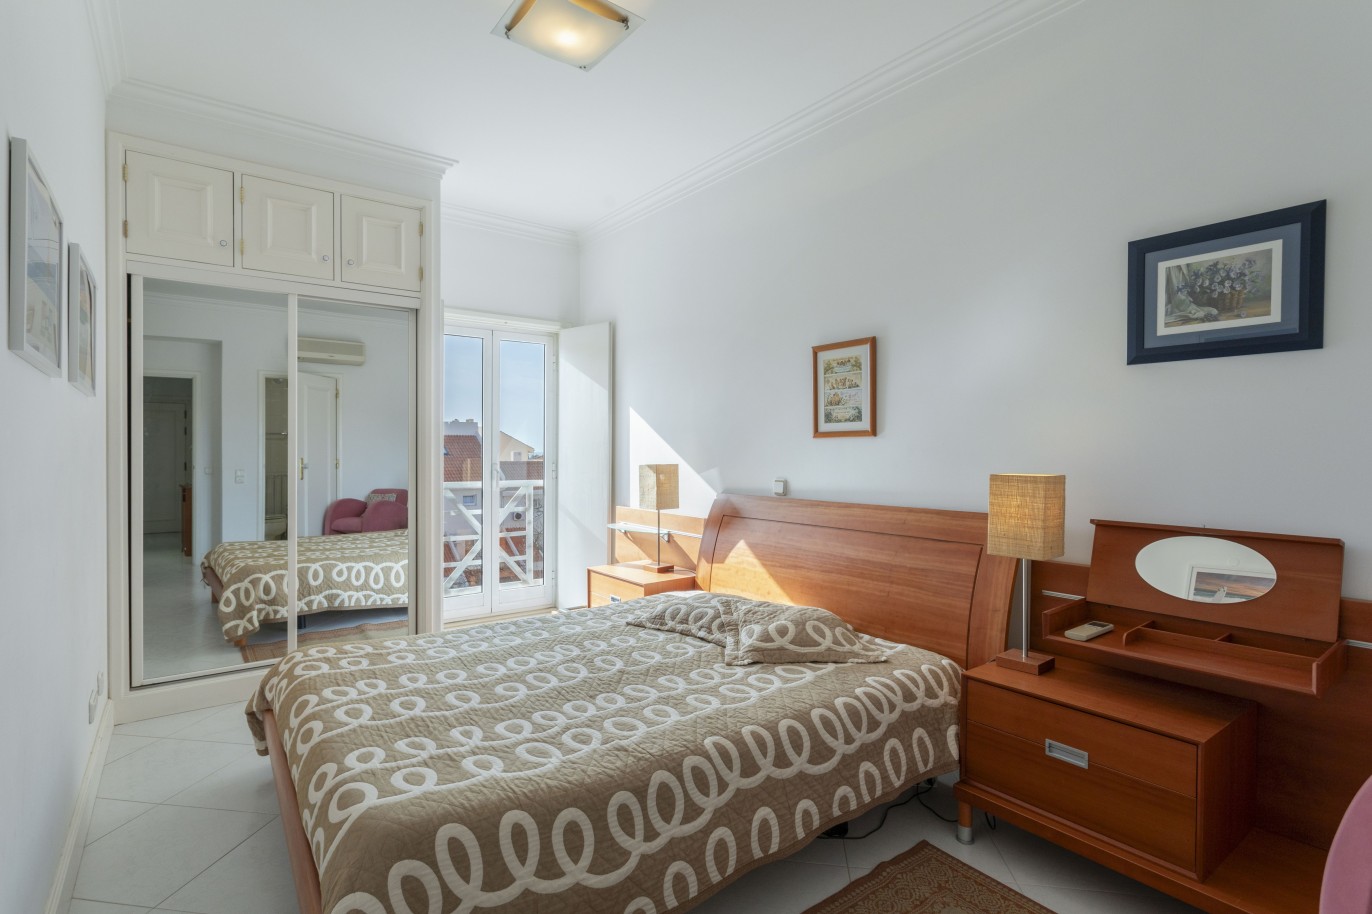 1+1-bedroom flat in gated community for sale in Vilamoura, Algarve_251205